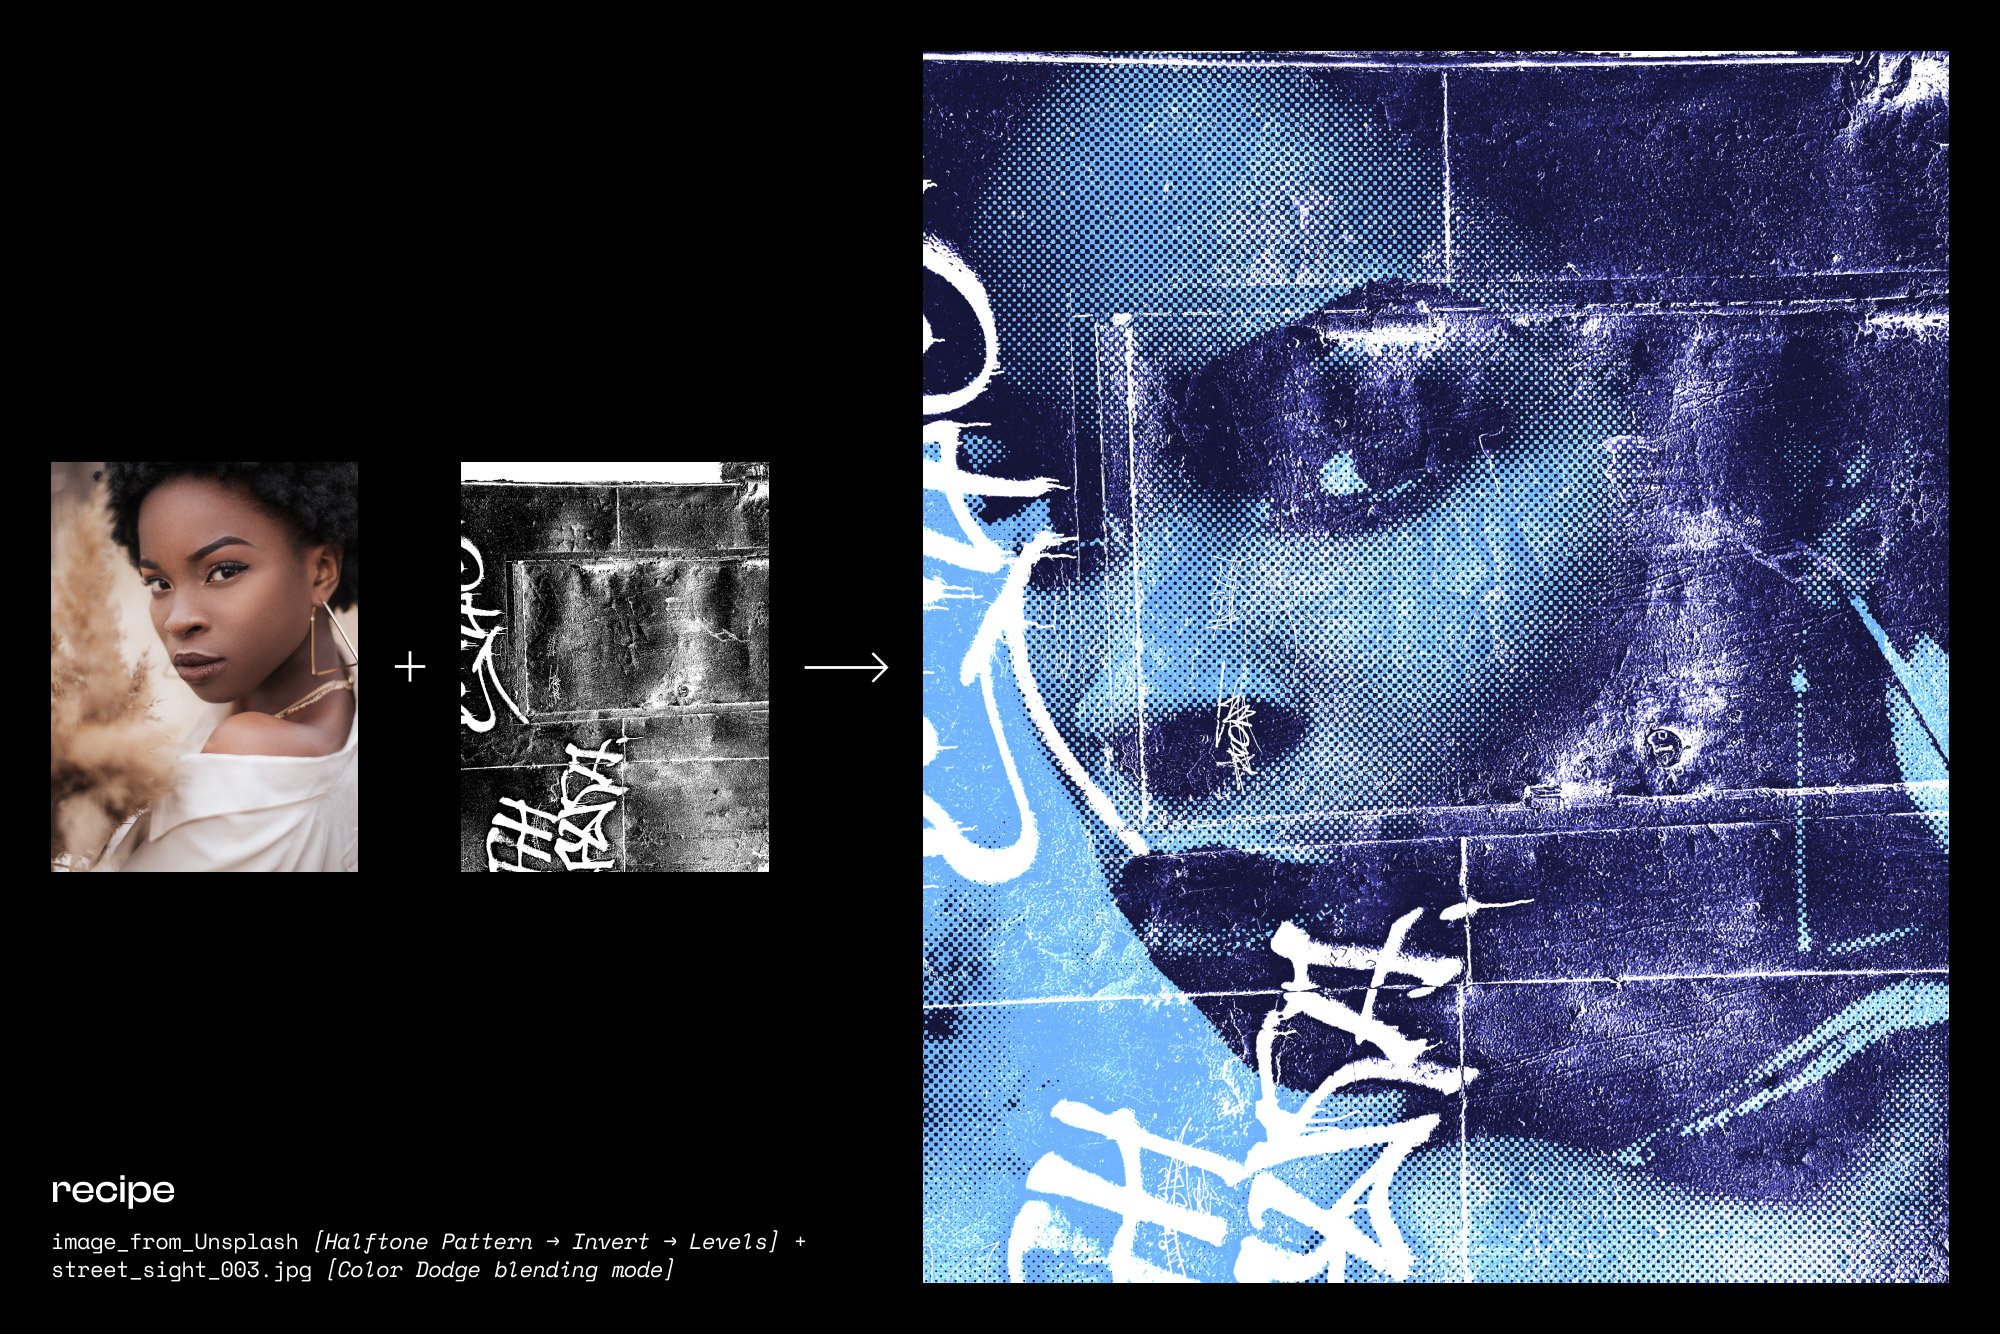 50款复古做旧酸性摇滚嘻哈说唱污渍粗糙划痕涂鸦抽象艺术音乐专辑封面海报设计背景图素材 STREET_SIGHT.JPG – Textures Pack（7463）图层云8